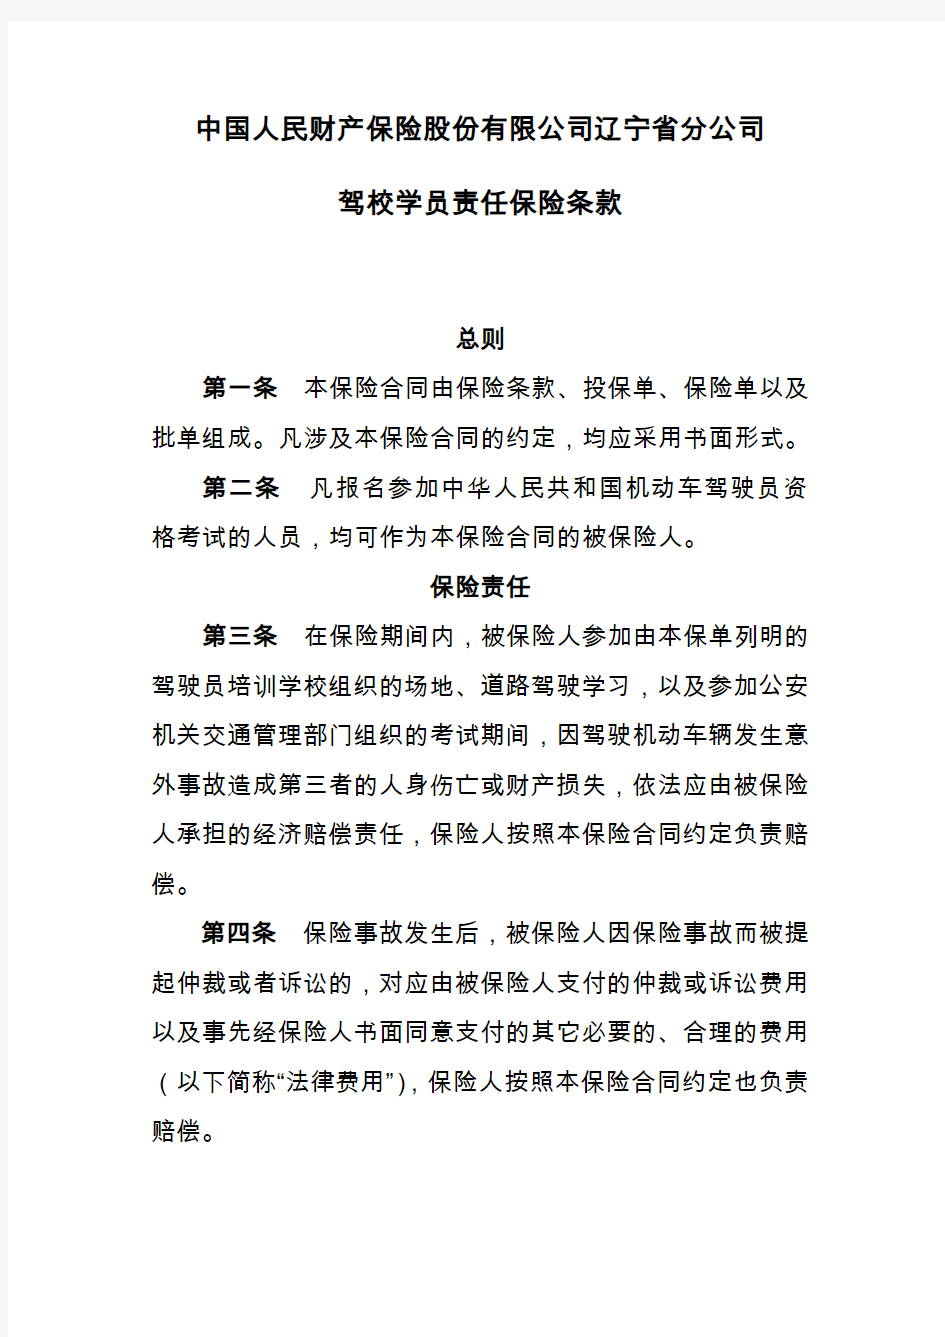 中国人民财产保险股份有限公司辽宁省分公司驾校学员责任保险条款